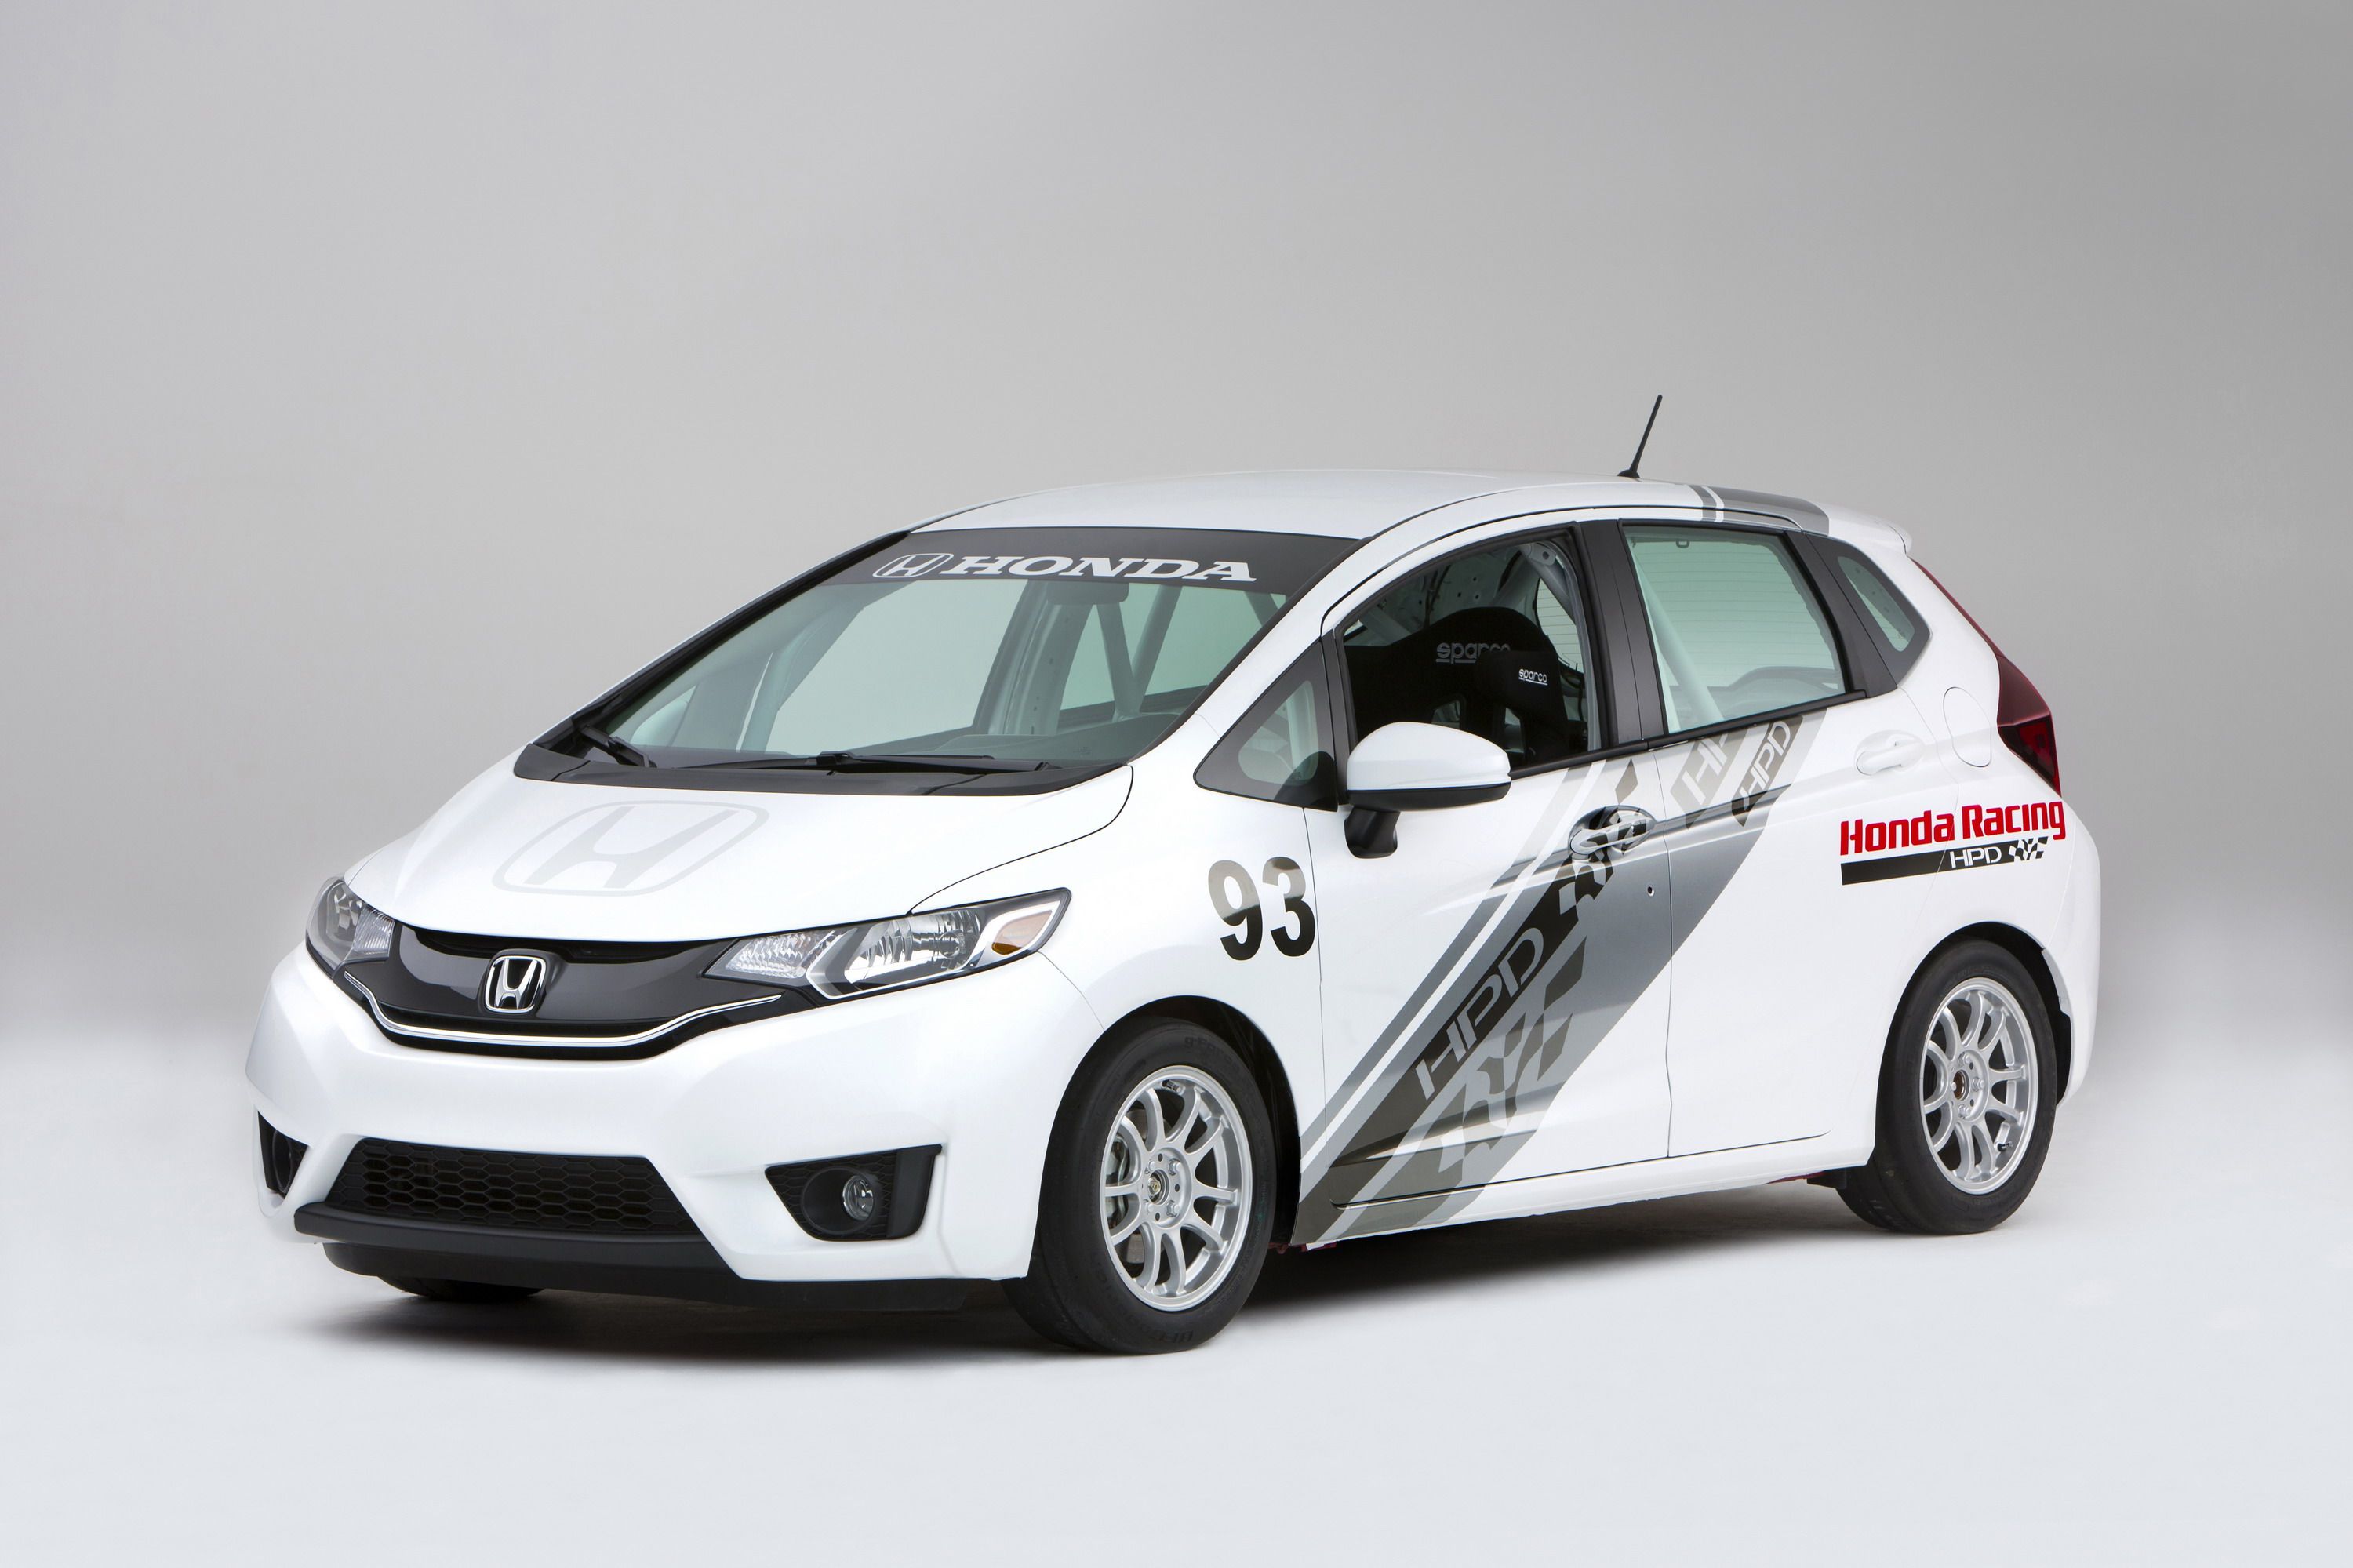 2015 Honda Fit HPD B-Spec Concept Race Car